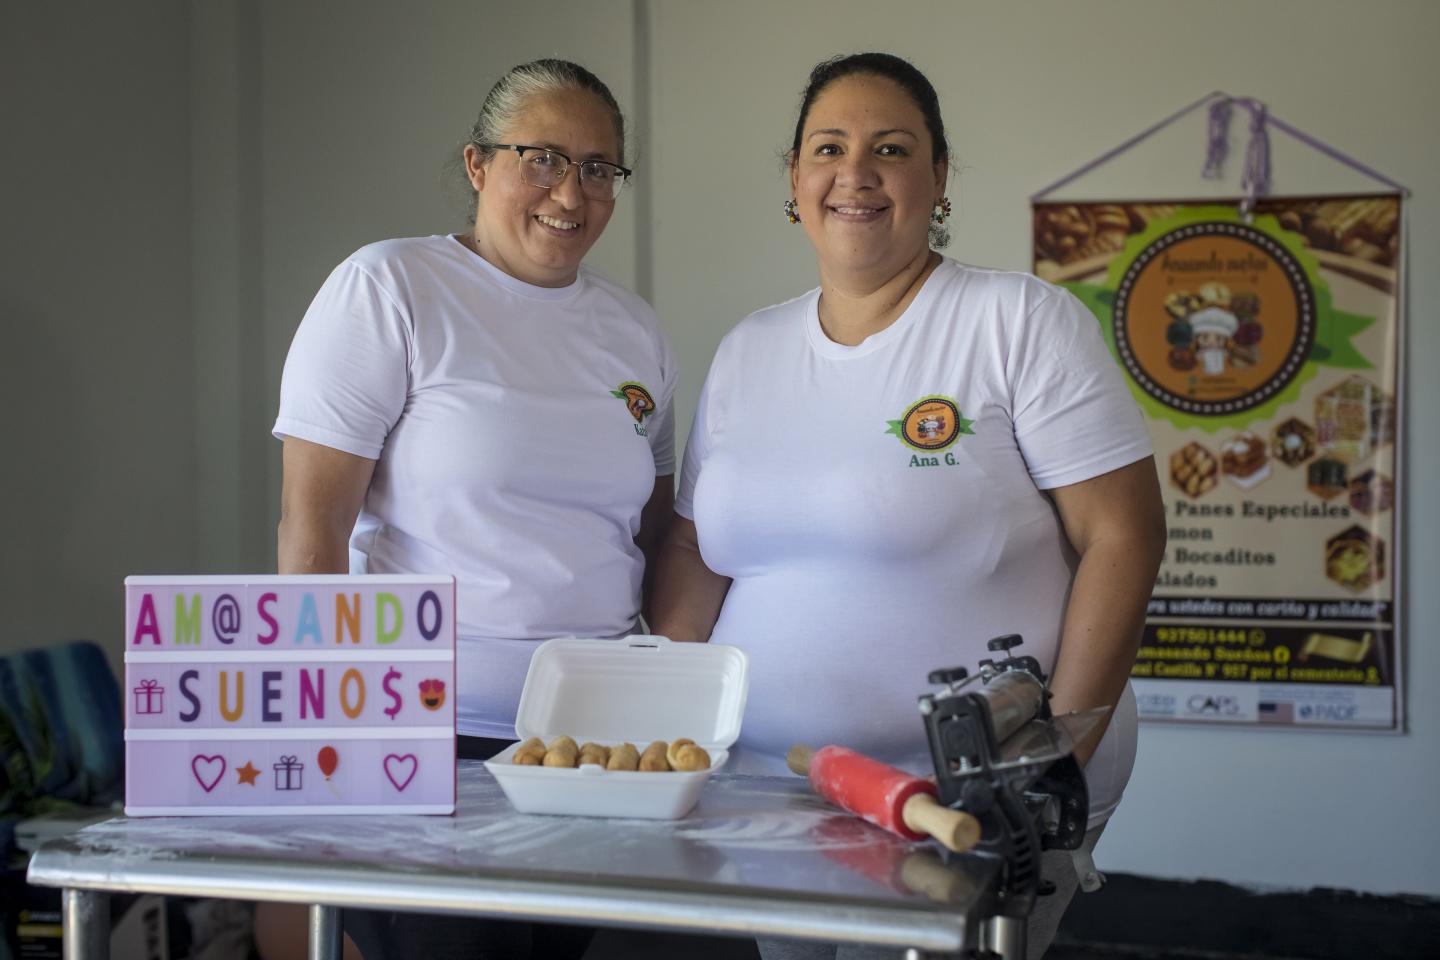 Kathy y Ana posan frente a la cámara con un plato de tequeños y un cartel con el nombre de su negocio: "Amasando Sueños"